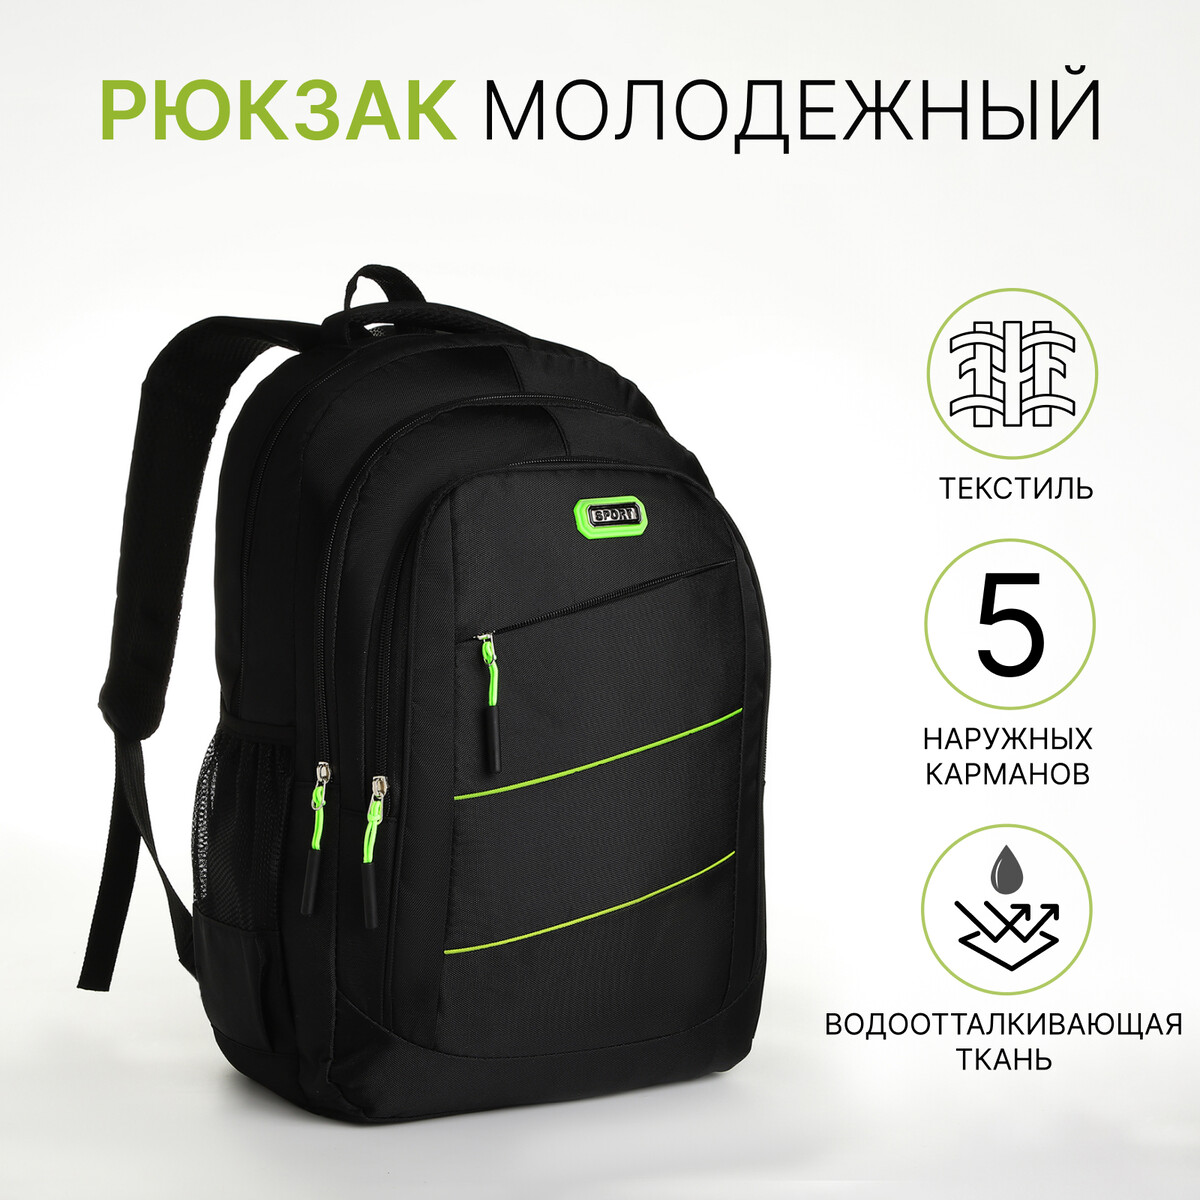 Рюкзак молодежный из текстиля на молнии, 5 карманов, цвет черный/зеленый